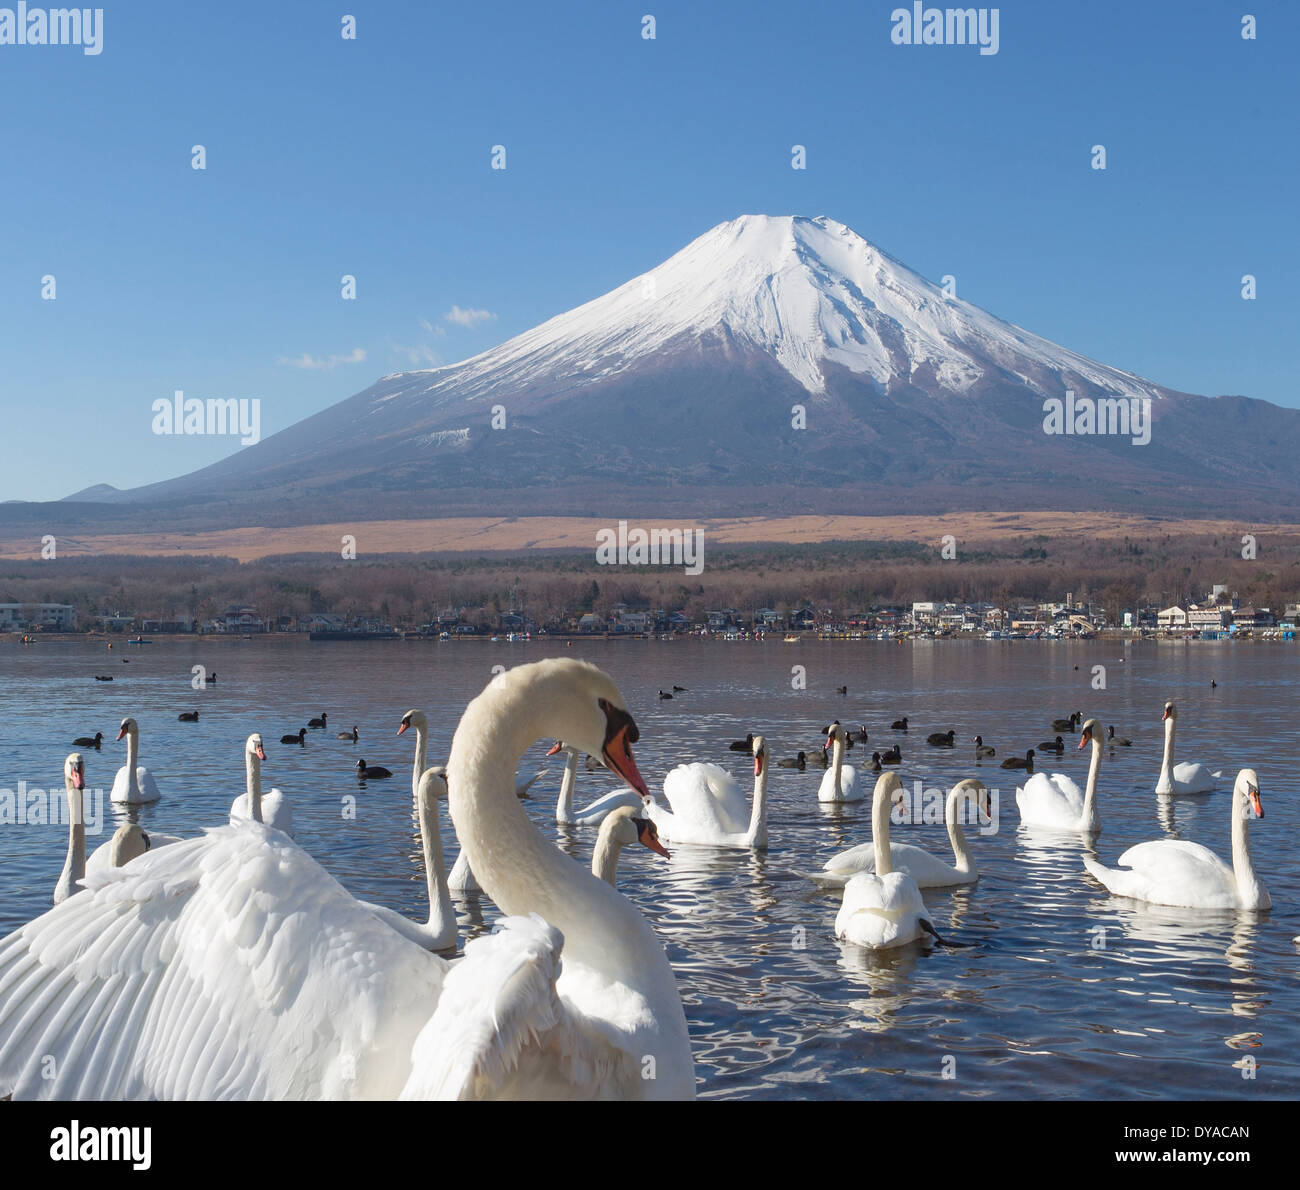 Le Japon, l'Asie, le lac Yamanaka, cygnes, oiseaux, Yamanaka, claire, Fuji, lac, mont, réflexion, neige, touristique, voyage Banque D'Images